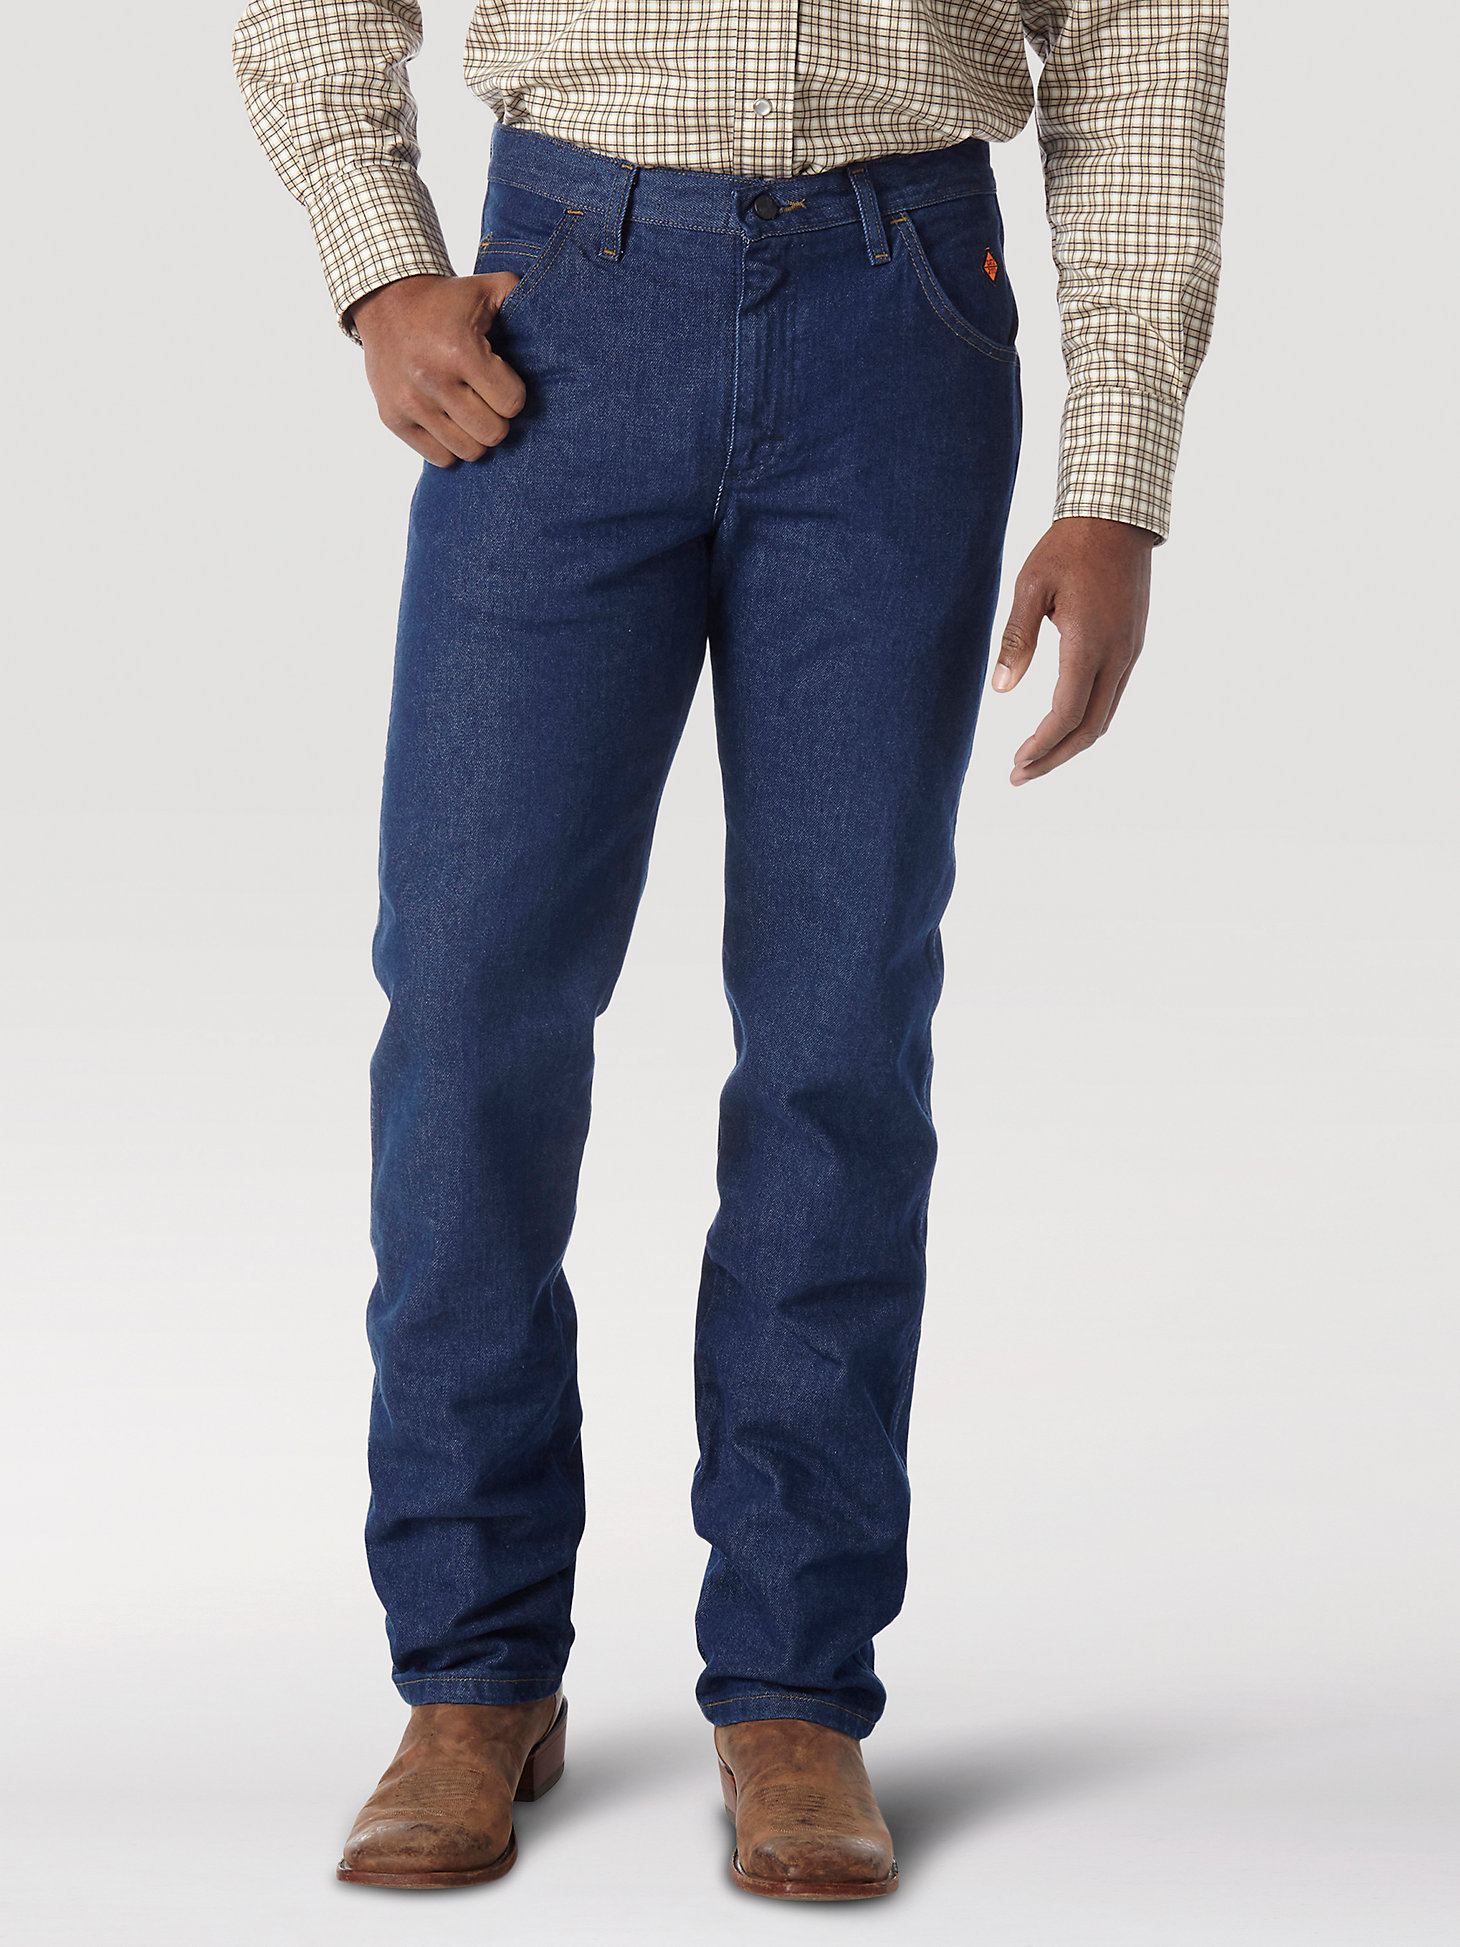 Men's Wrangler® FR Flame Resistant Regular Fit Lightweight Denim Jean in Prewash main view